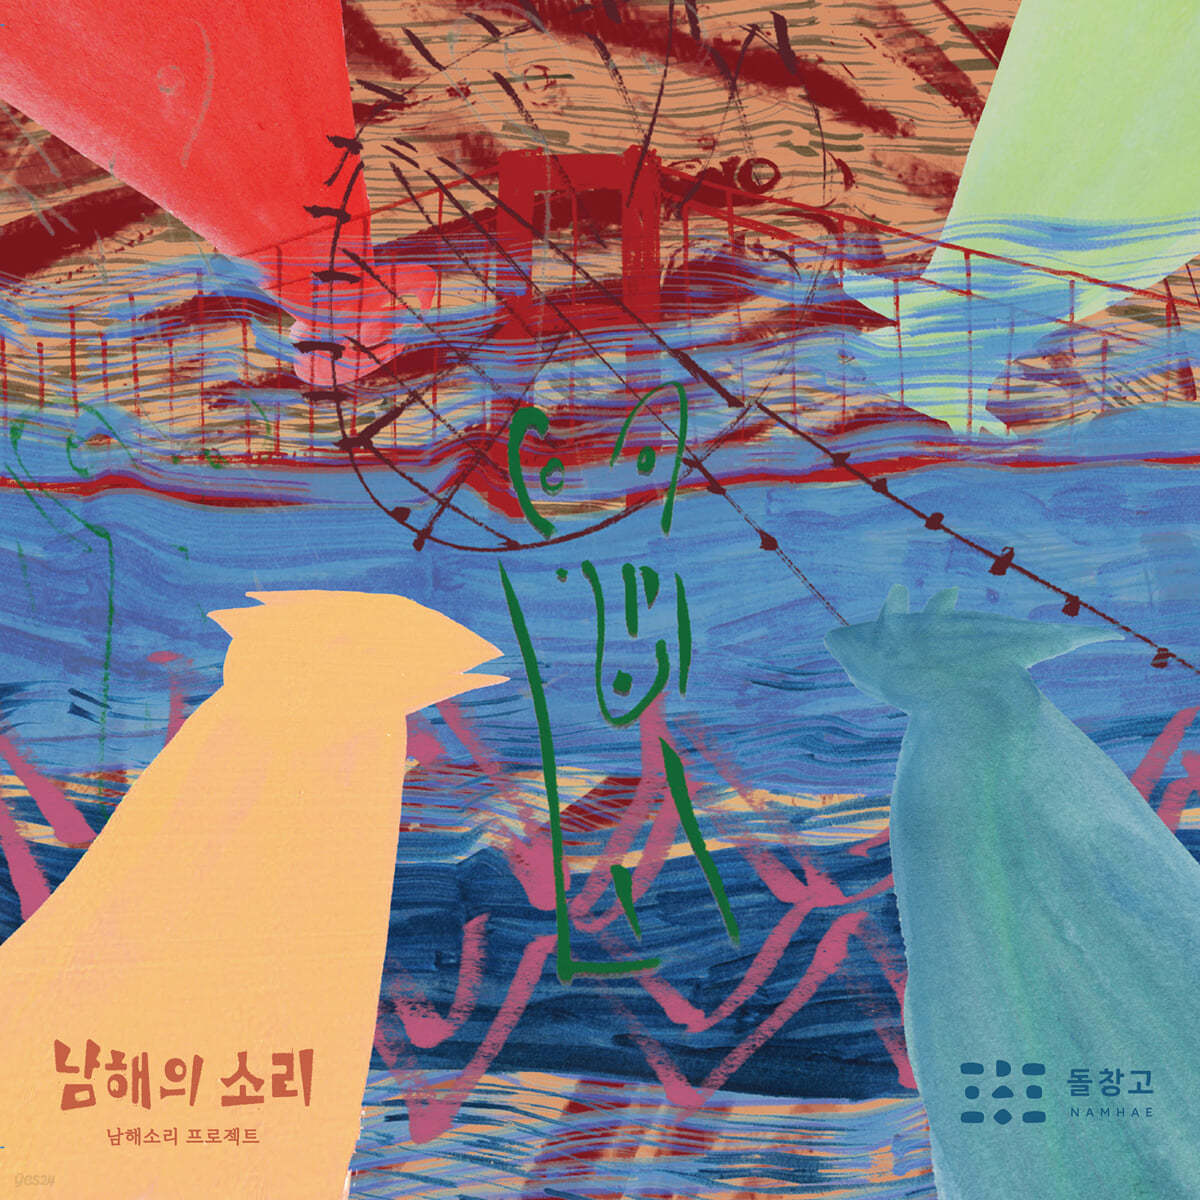 남해소리 프로젝트 - 남해의 소리